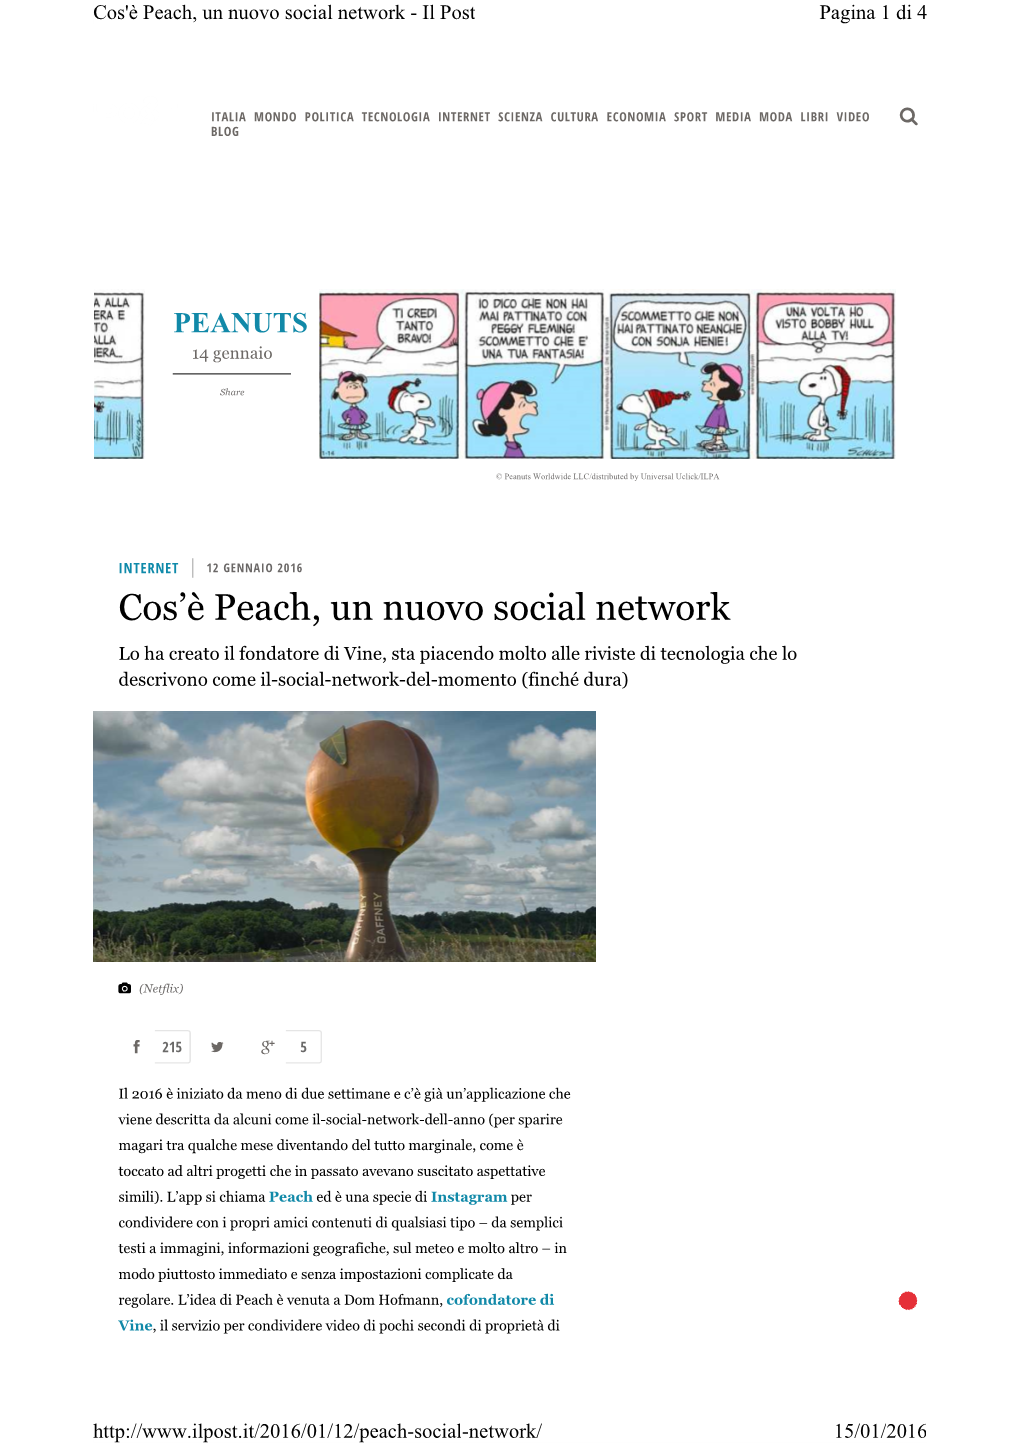 Cos'è Peach, Un Nuovo Social Network - Il Post Pagina 1 Di 4